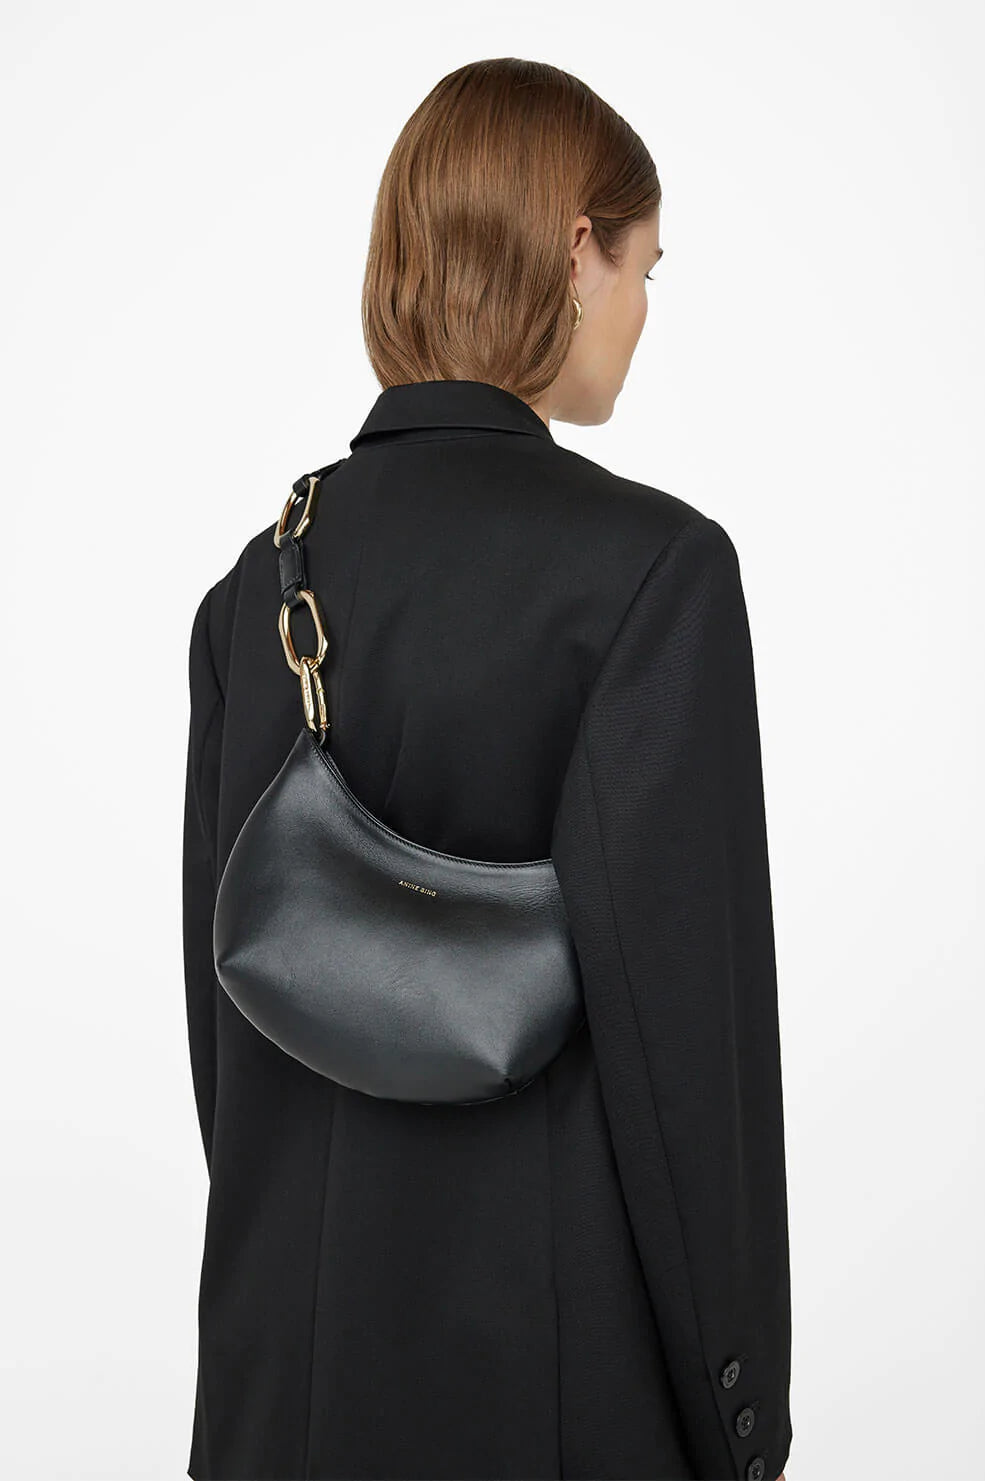 Anine Bing - Mini Jody Bag in Black